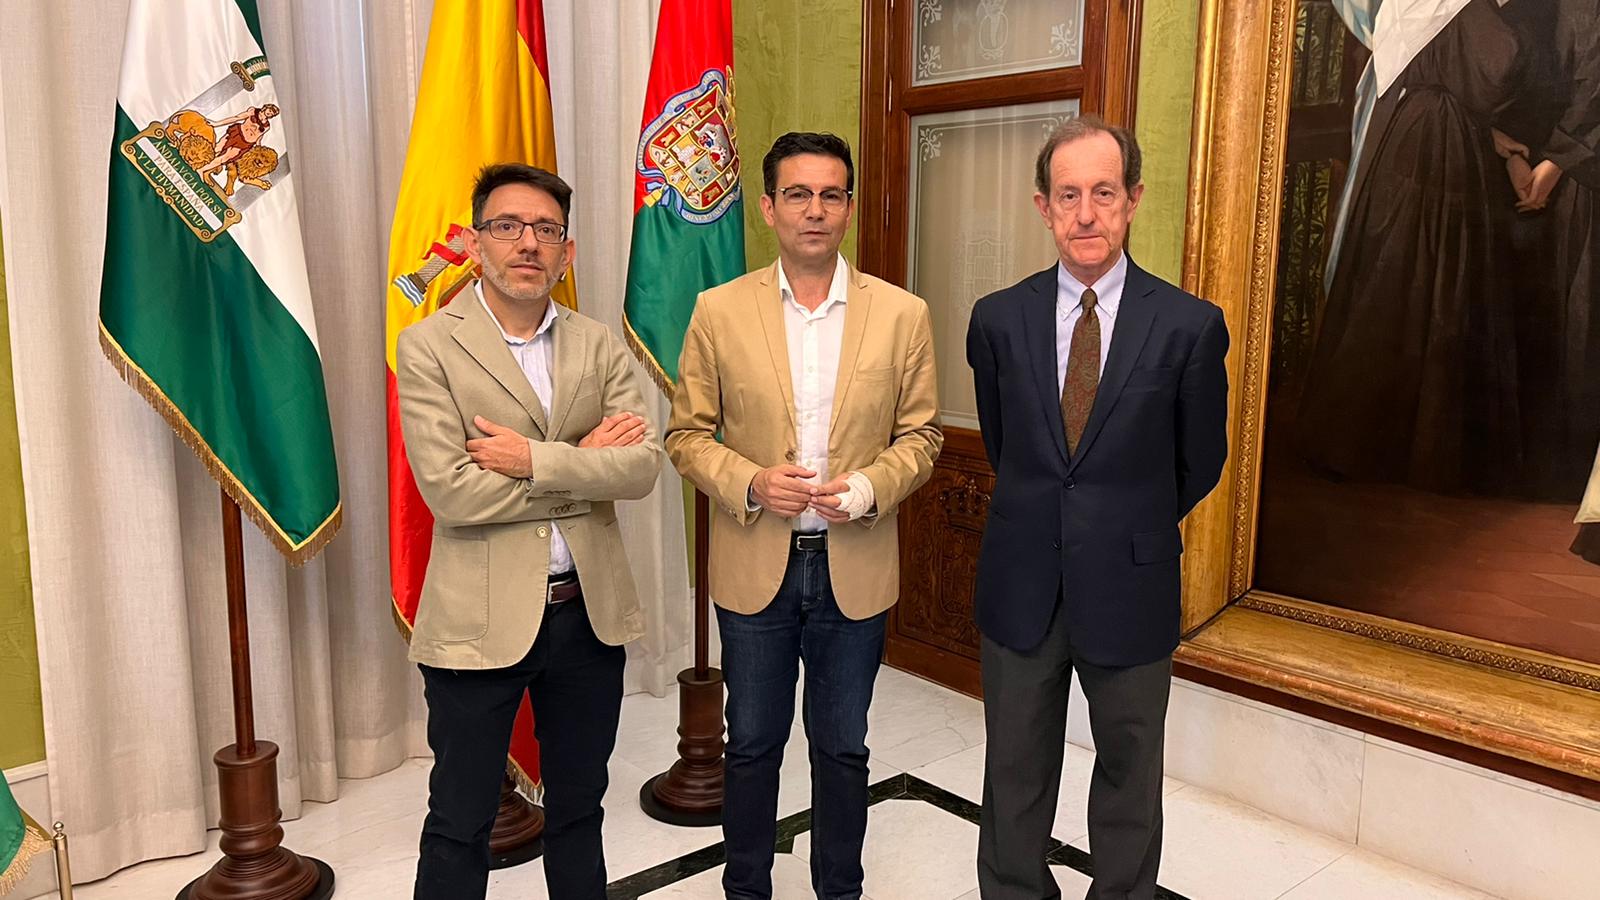 Francisco Cuenca with Ramón Gutiérrez and Miguel Ortega